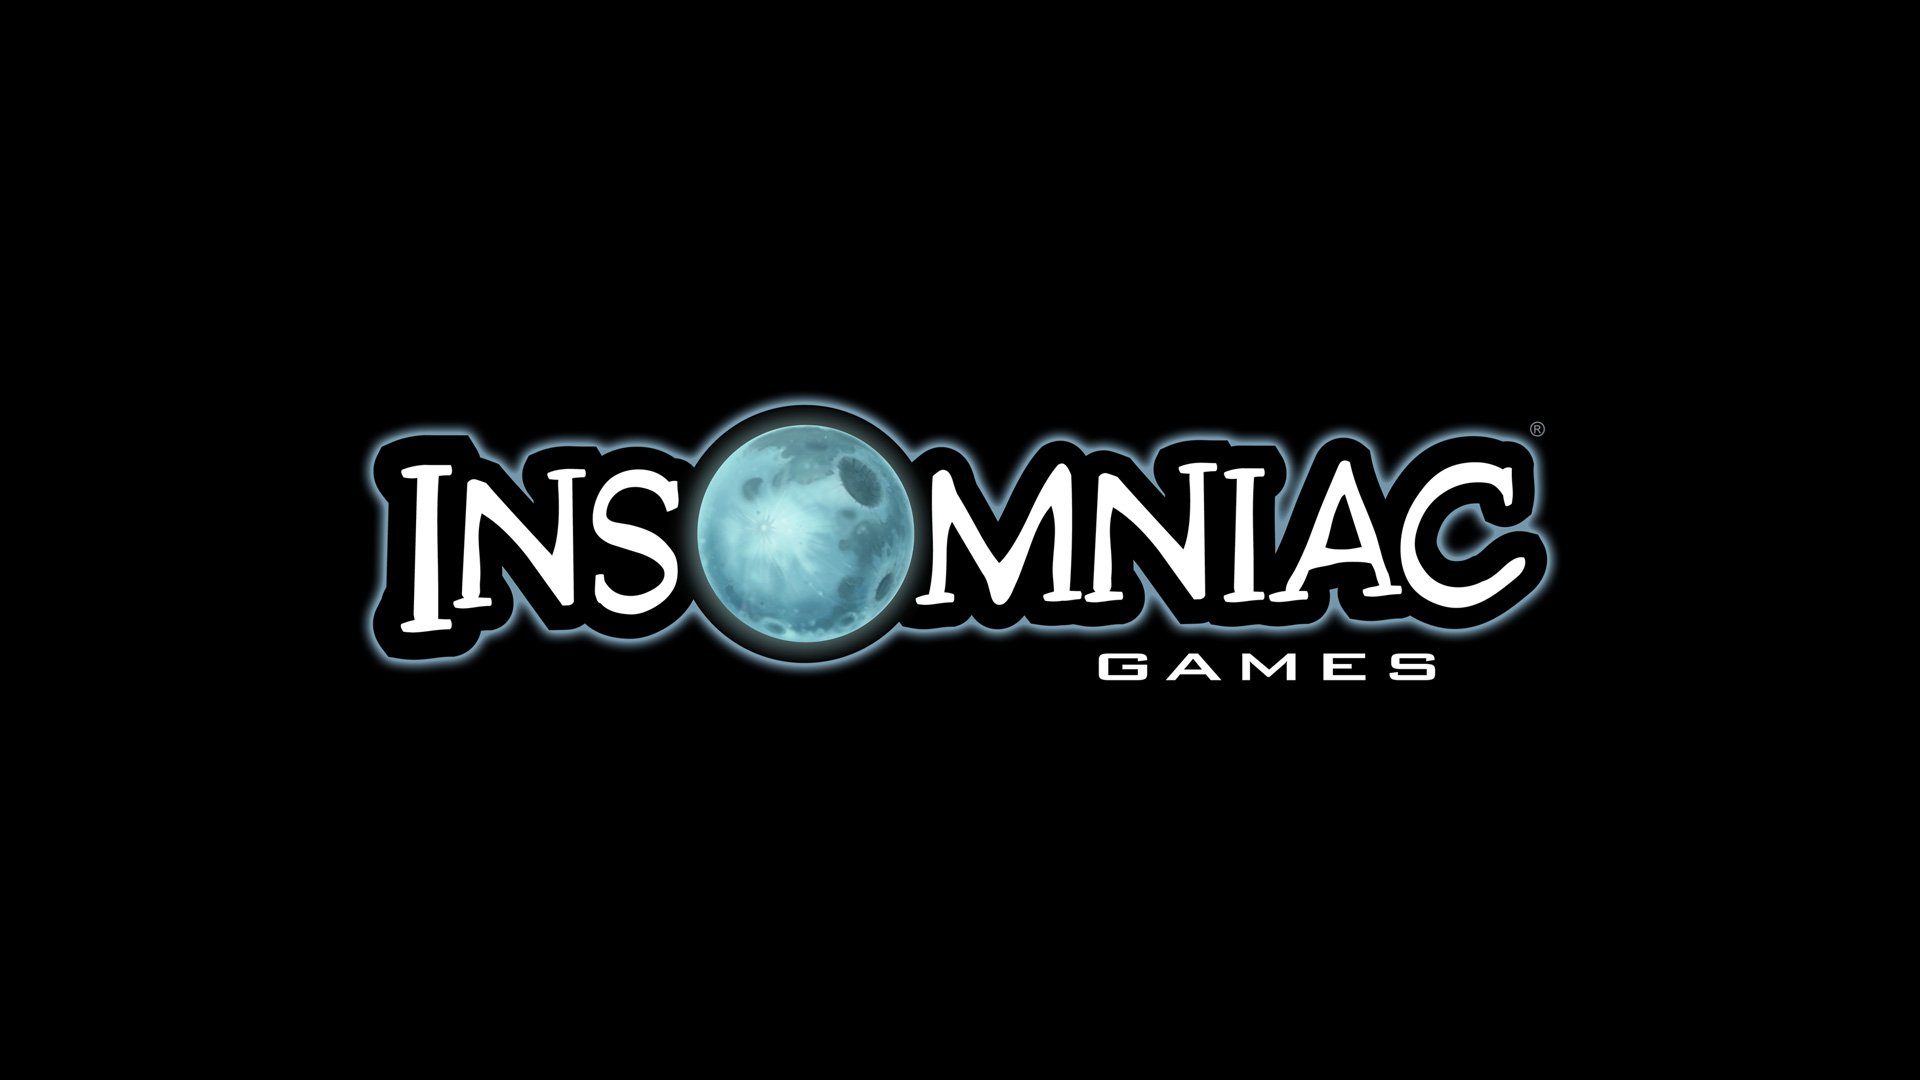 Insomniac-Games Logo.jpg